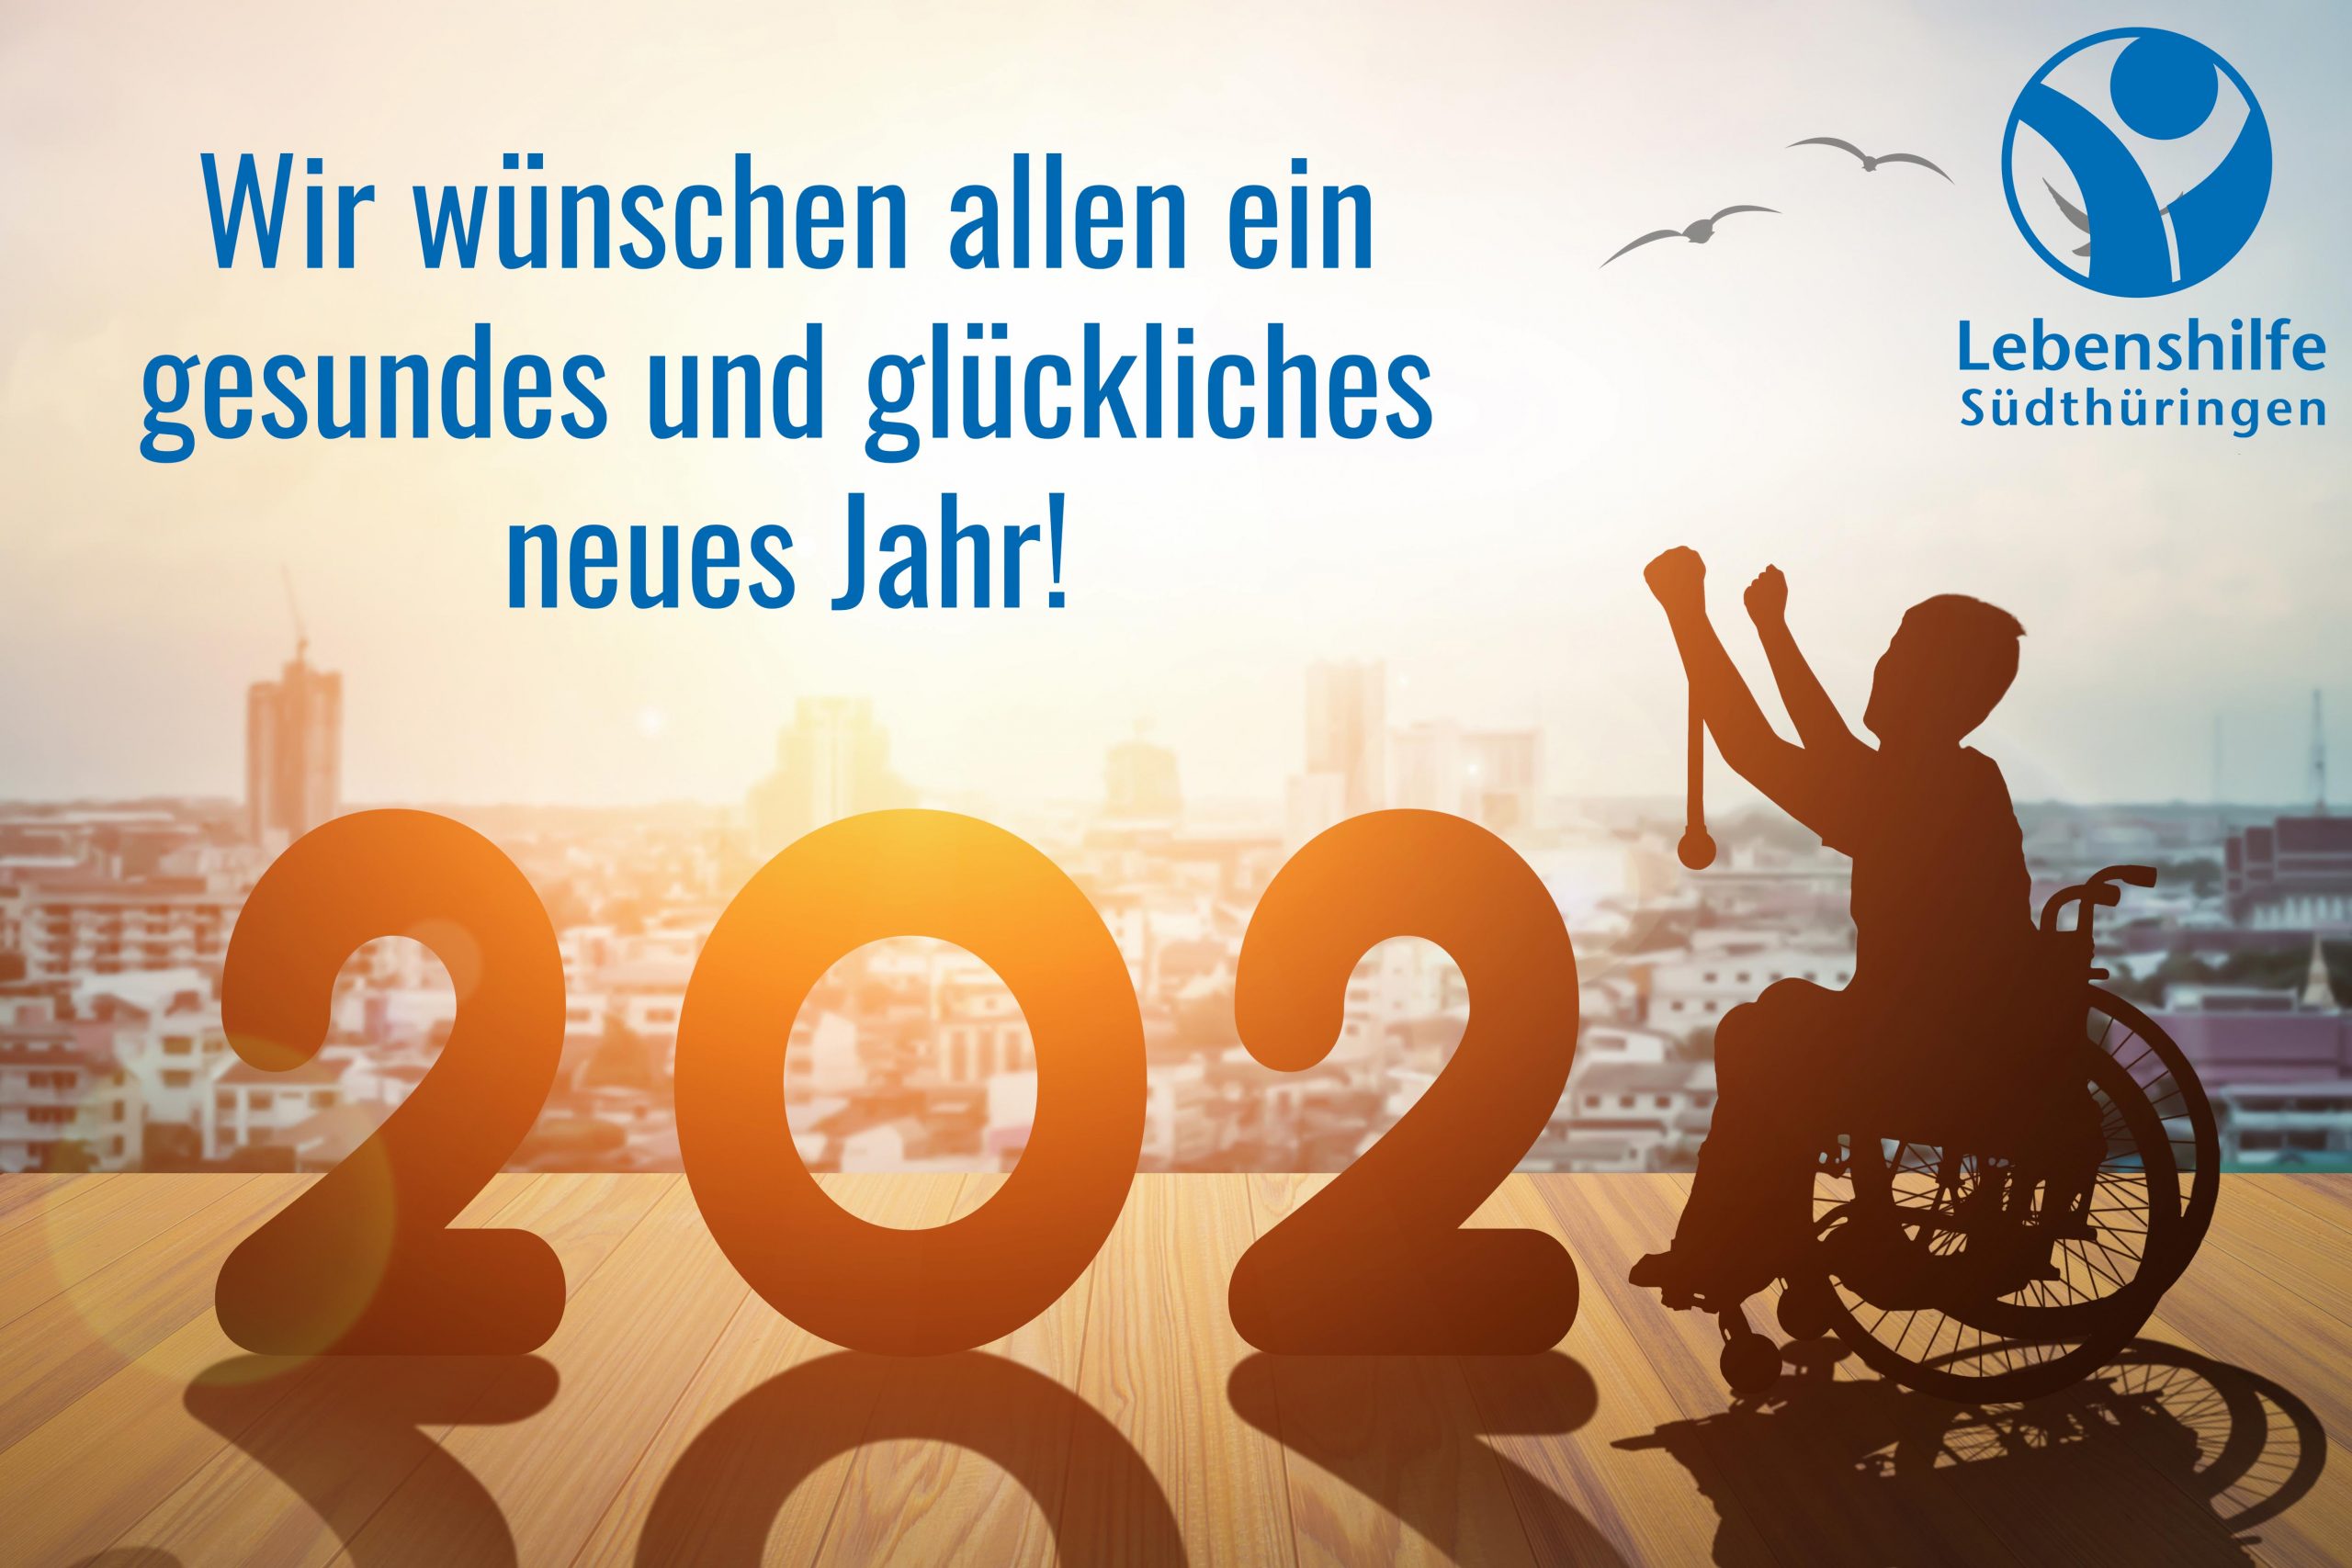 Featured image for “Gesundes & glückliches neues Jahr!”